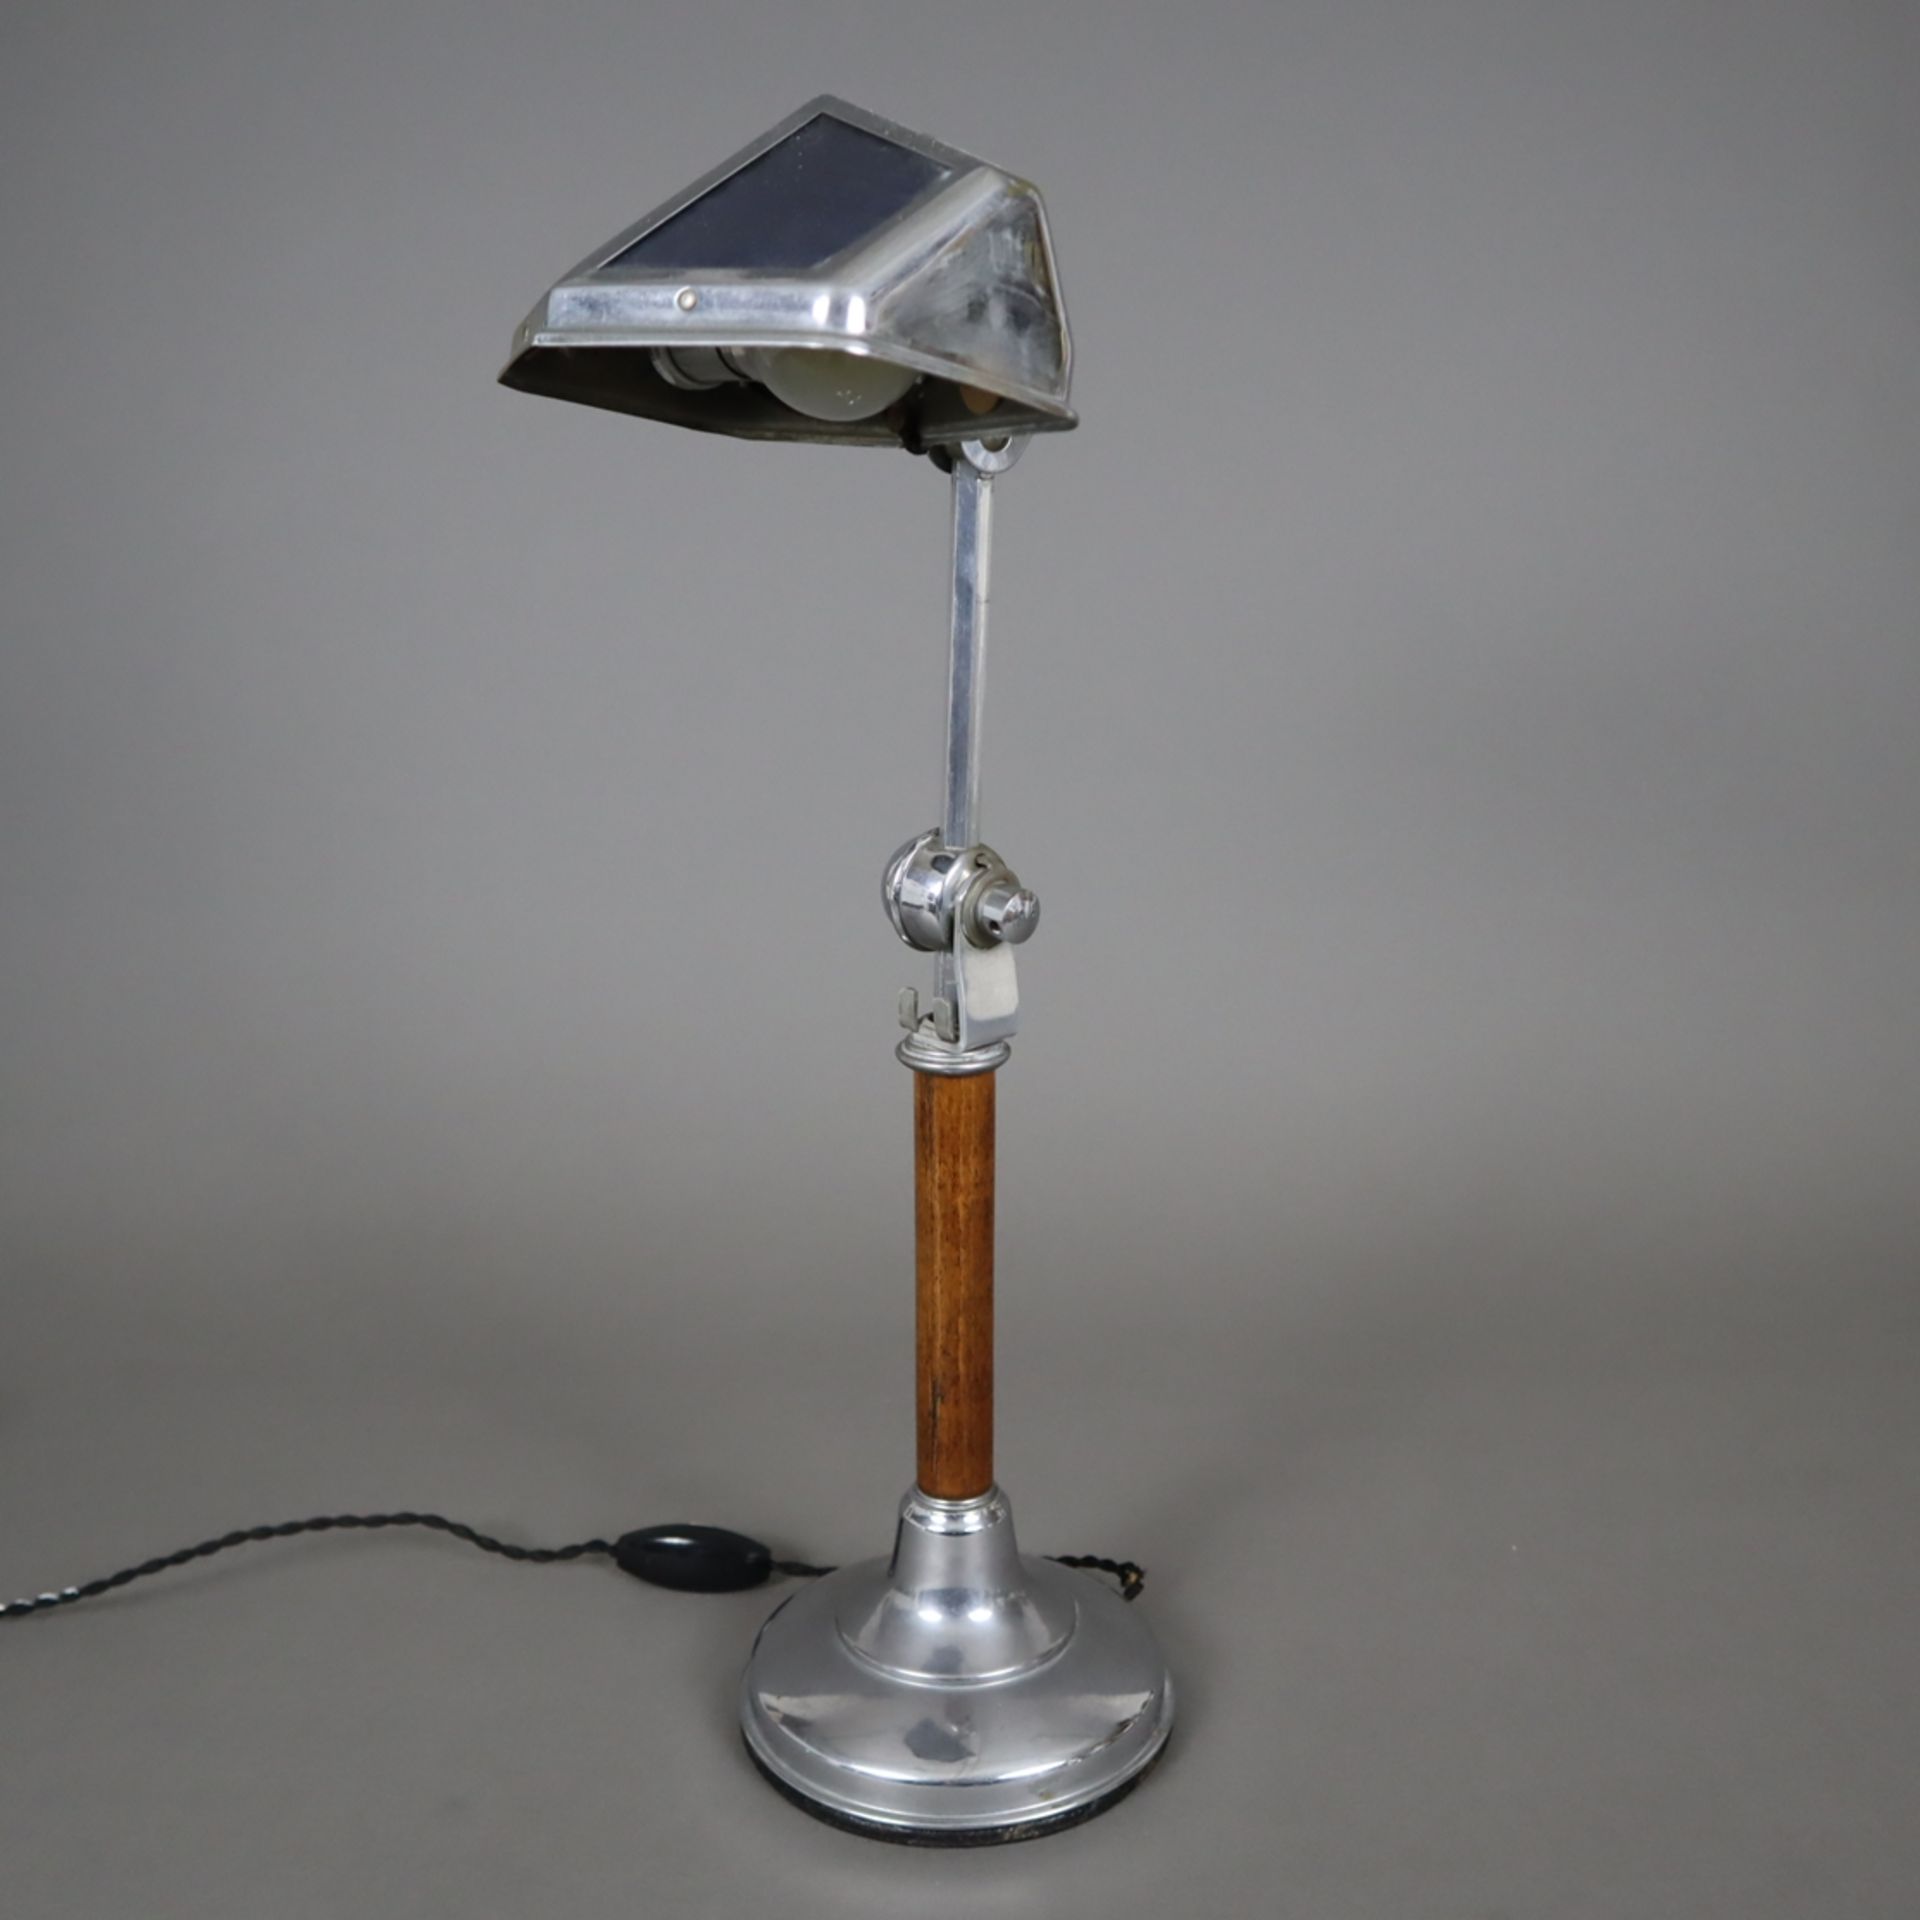 Art-Déco Tischlampe - 1.Hälfte 20.Jh., verchromtes Messing/Holz/Glas, trichterförmiger Standfuß, zy - Bild 2 aus 9